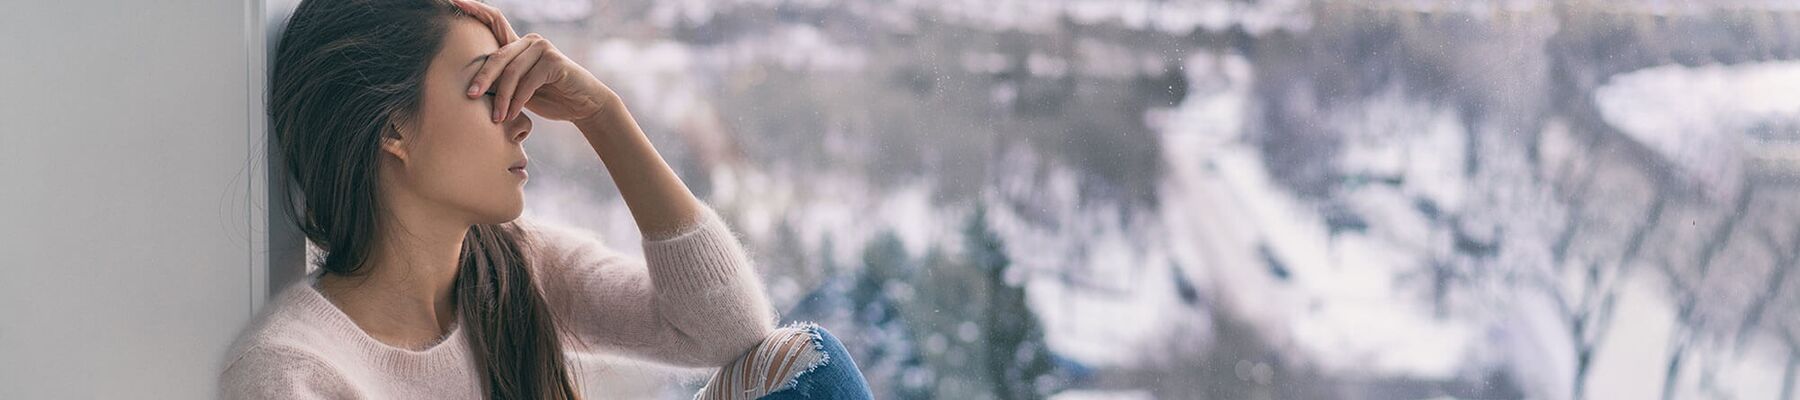 Foto: traurige Frau am Fenster mit Blick auf eine Winterlandschaft